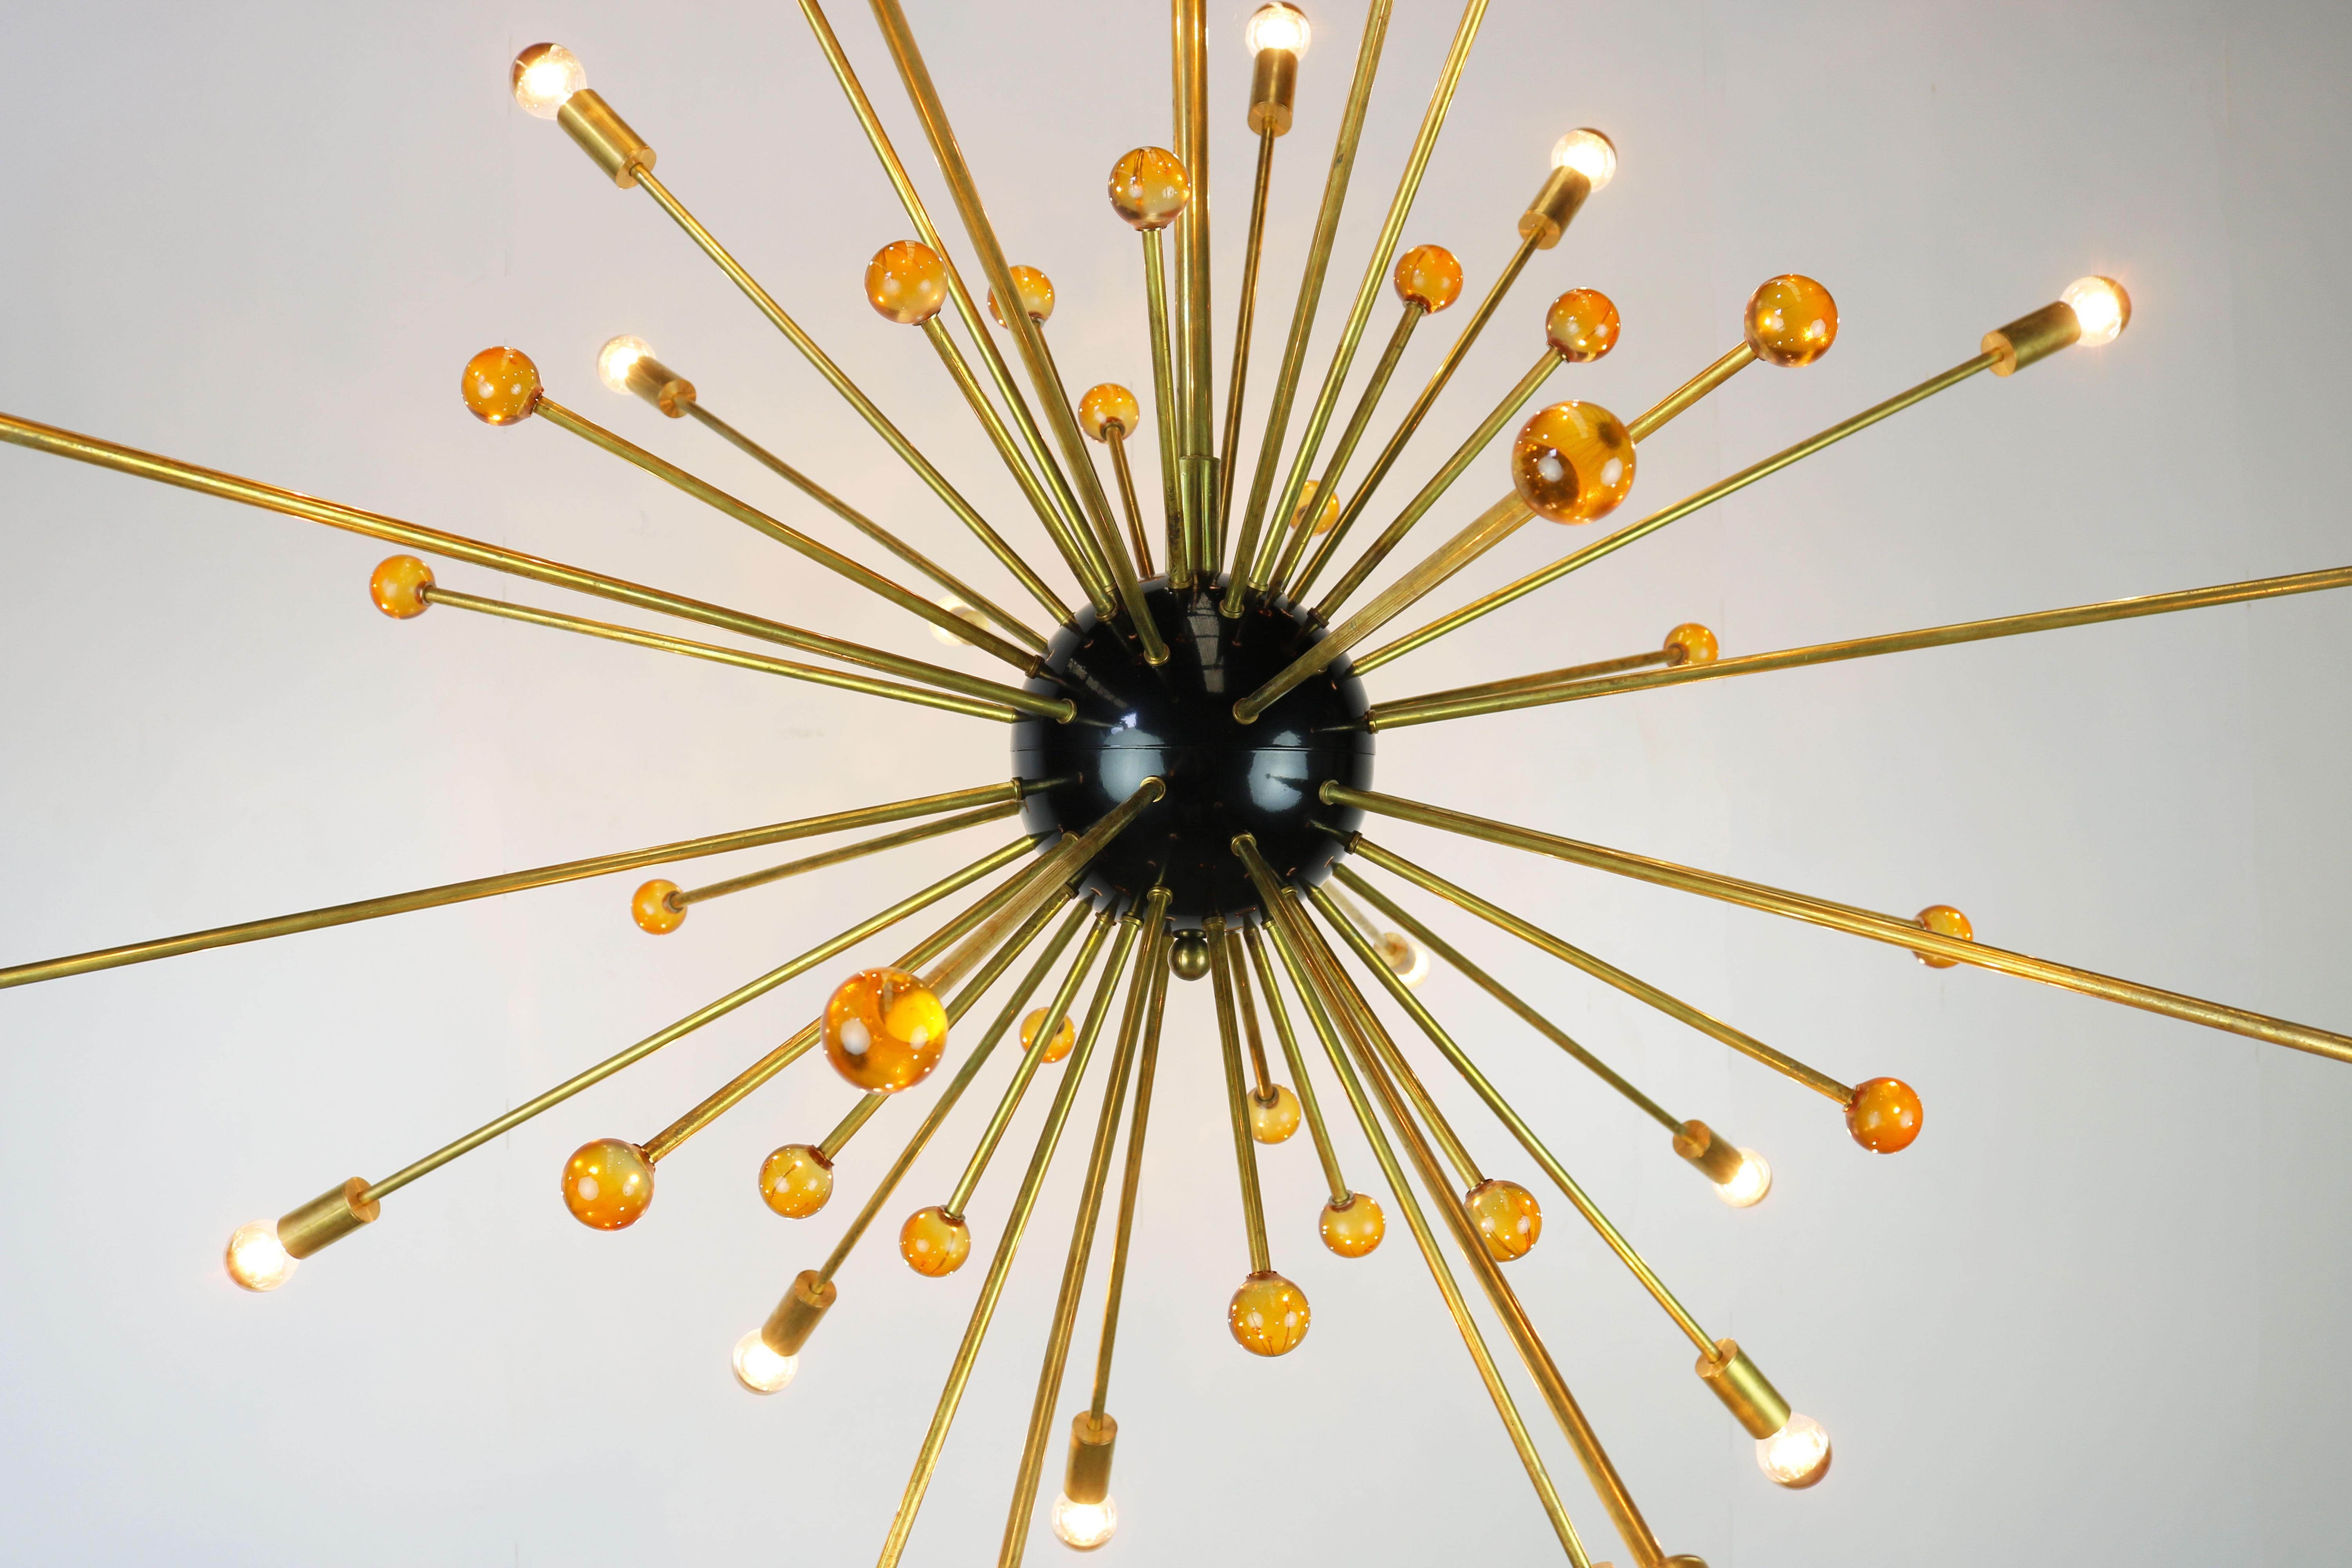 Massif lustre Sputnik Stilnovo avec un diamètre de 150 cm des années 1950. 
Le lustre est composé de 48 tiges en laiton, 24 tiges ont une douille de lumière et les 24 autres tiges ont une sphère en verre orange.
 Sa forme minimaliste lui permet de